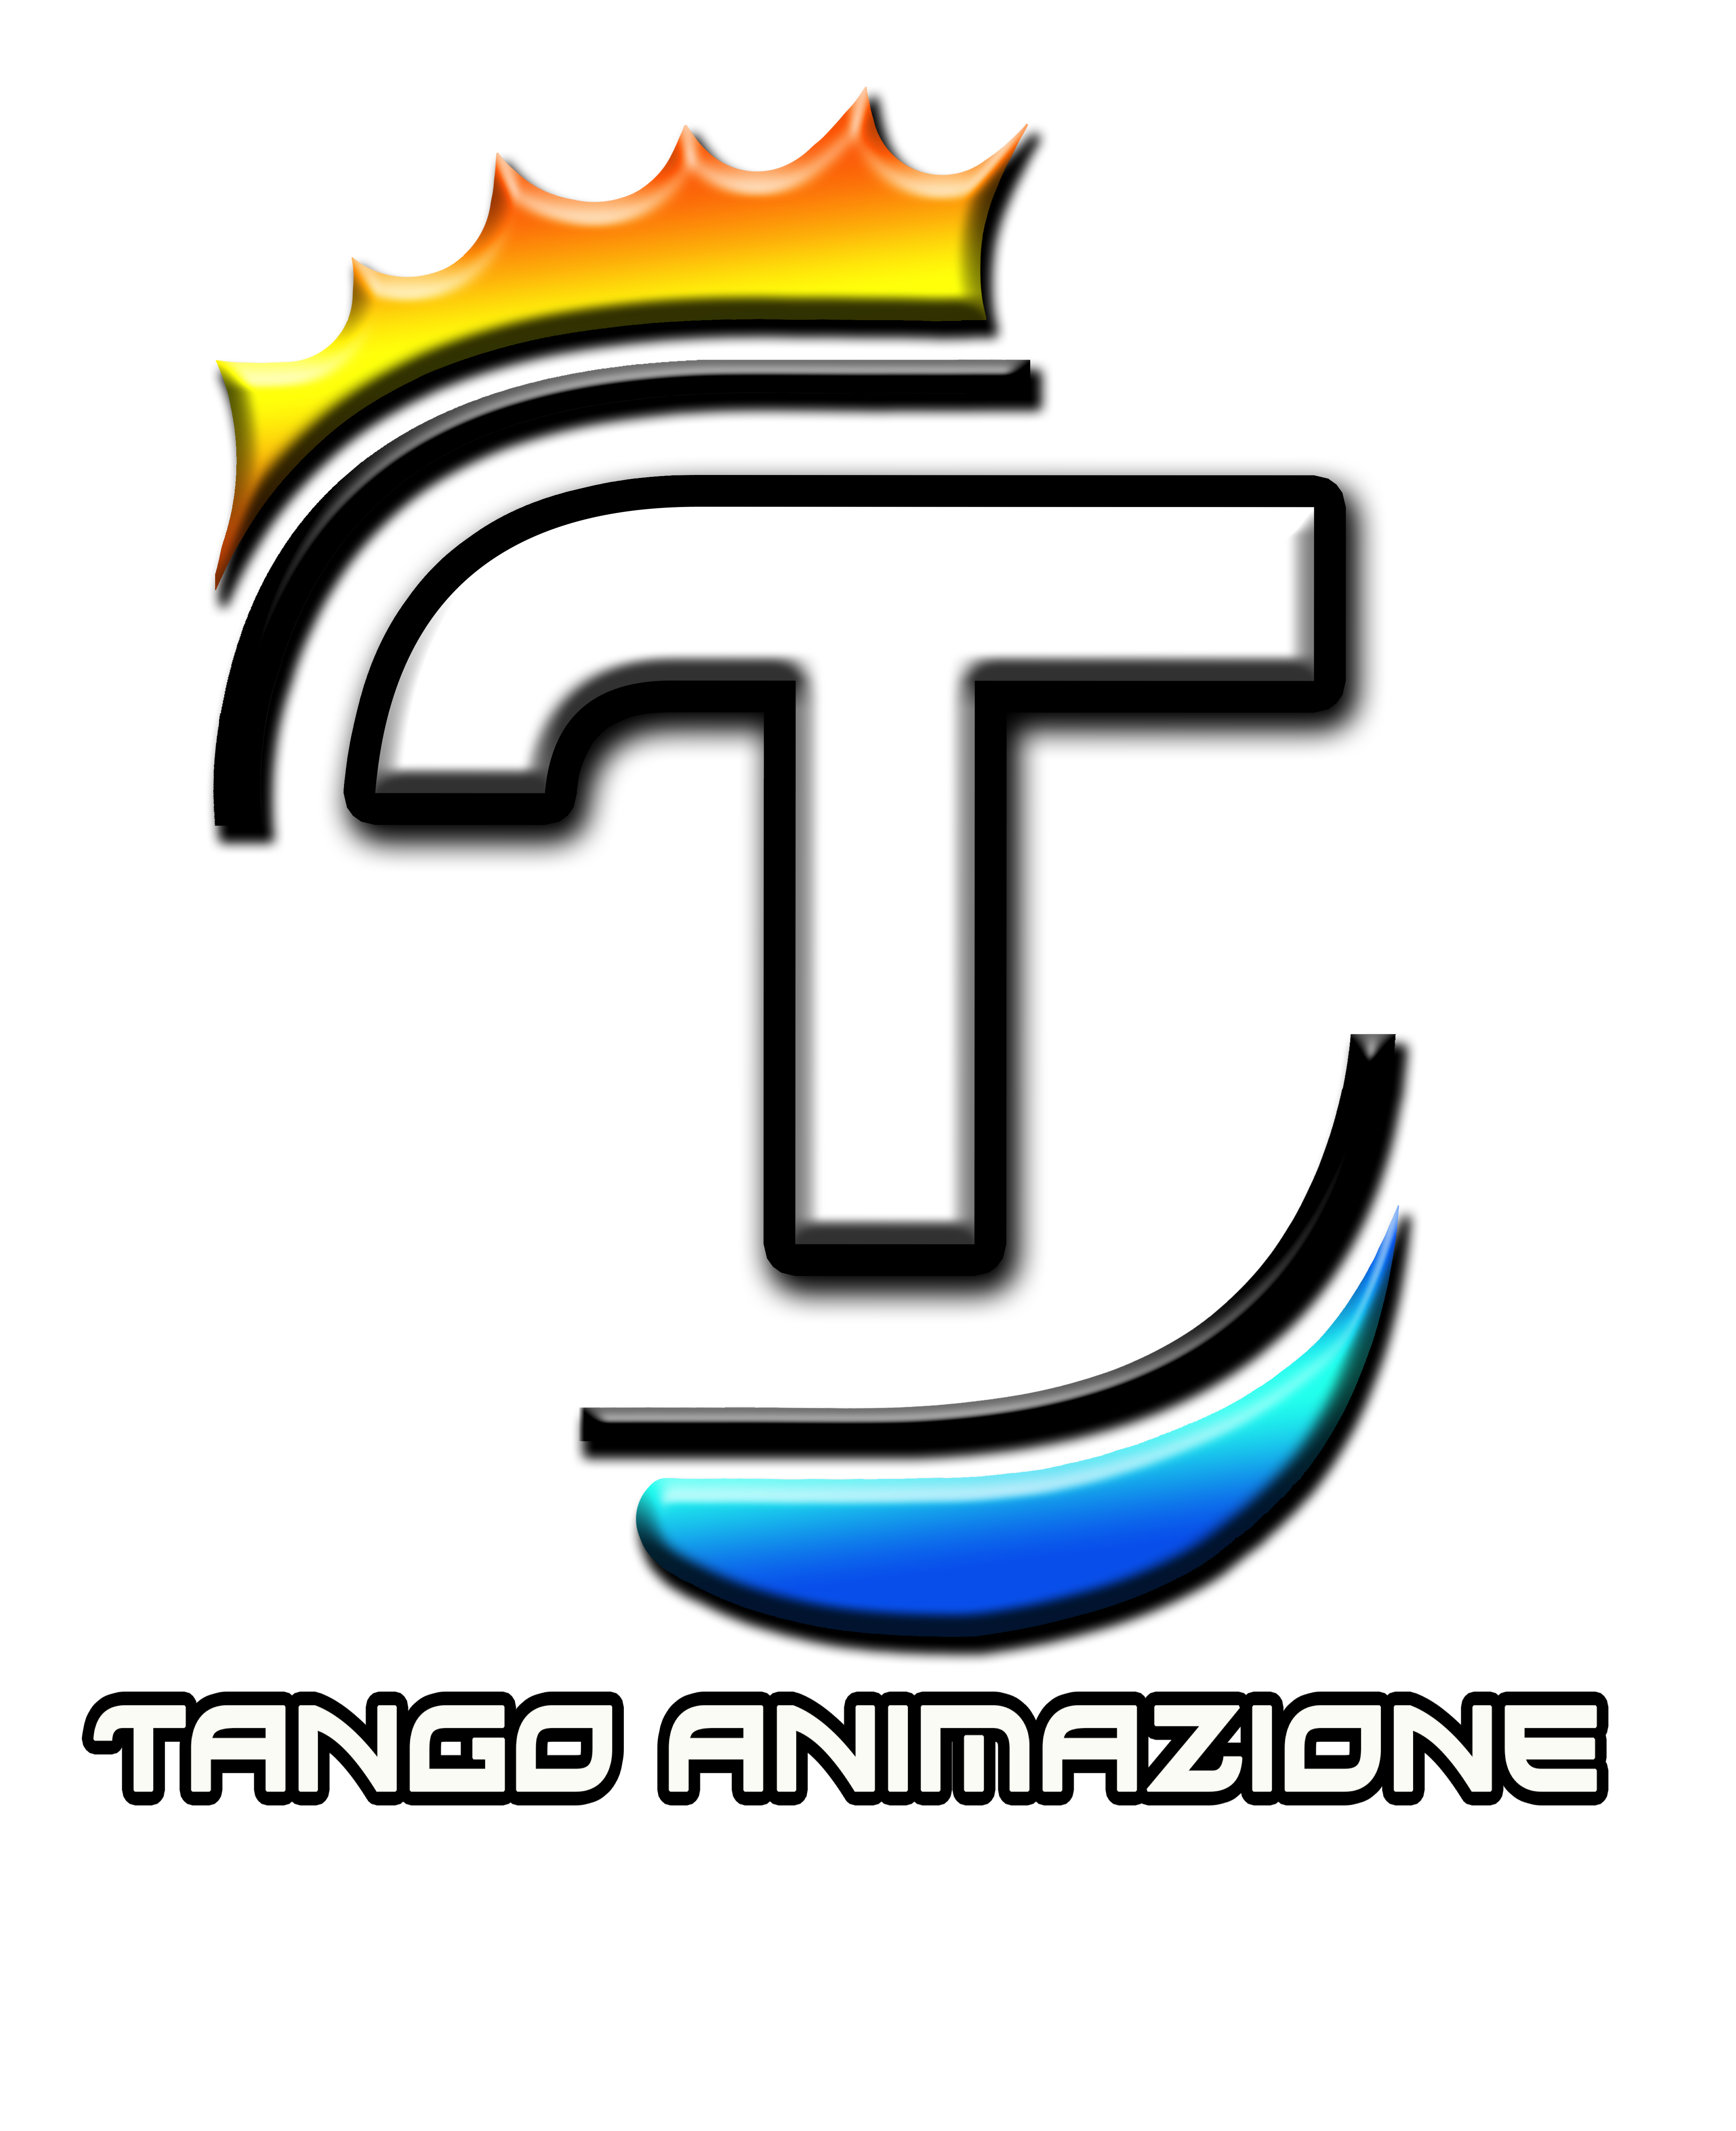 Tango Animazione